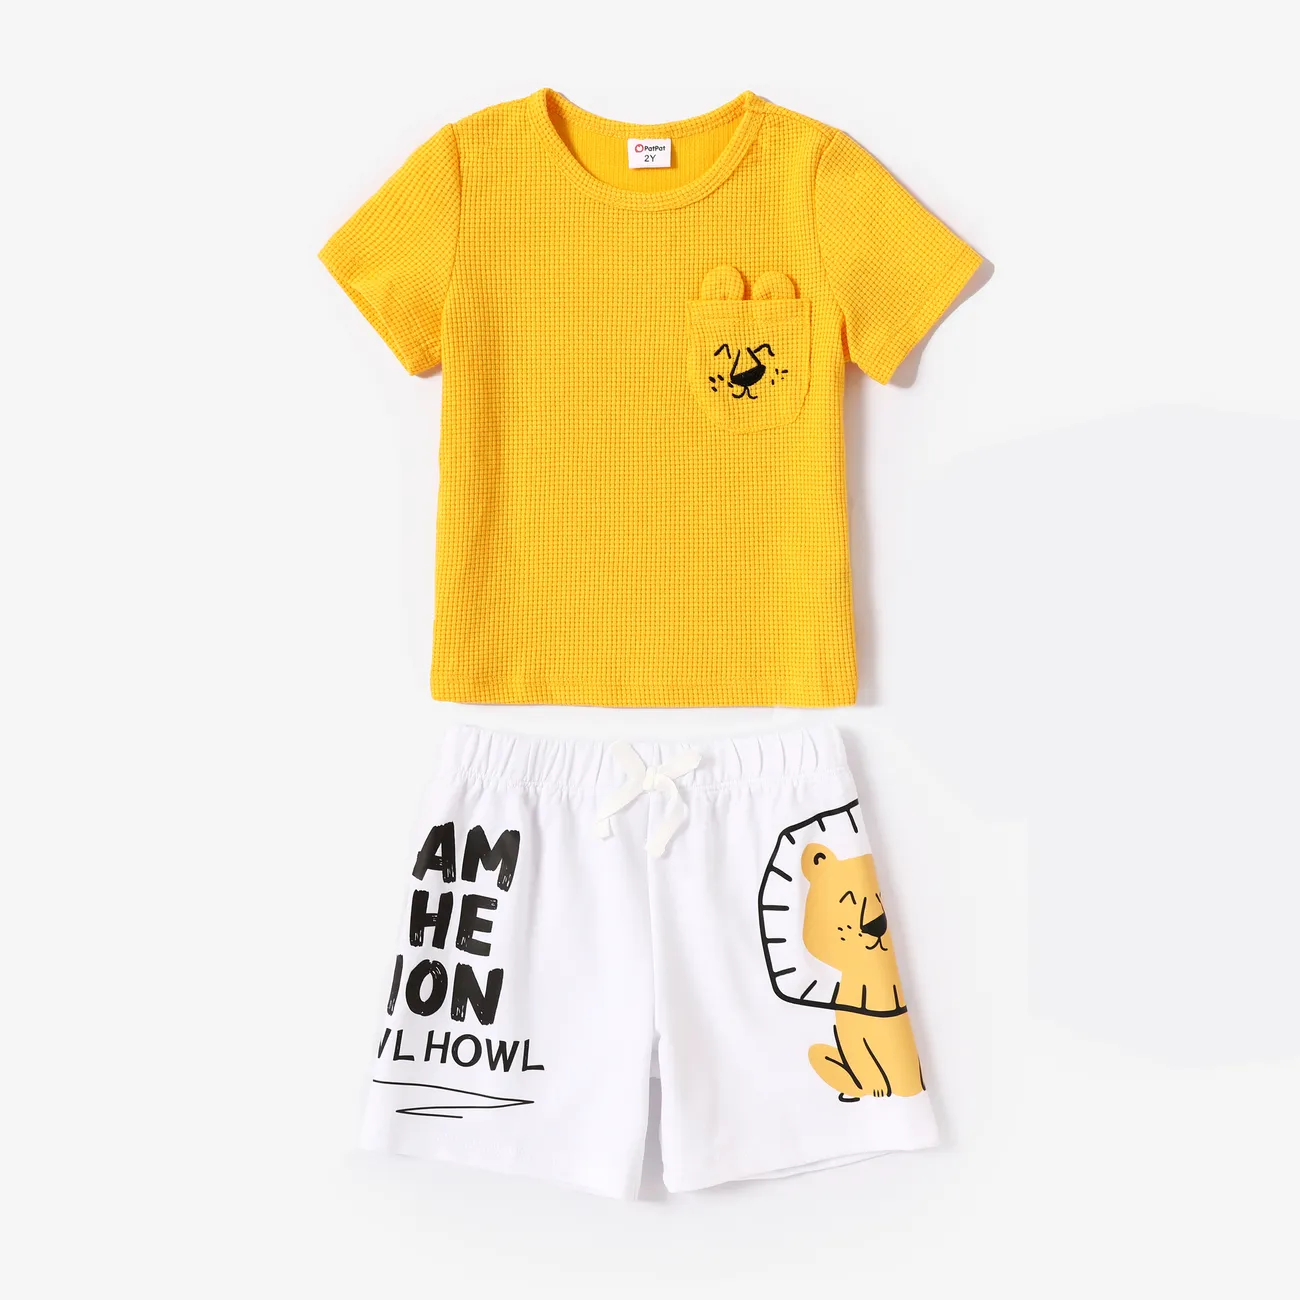 2 unidades Niño pequeño Chico Hipertáctil Infantil León conjuntos de camiseta Amarillo big image 1